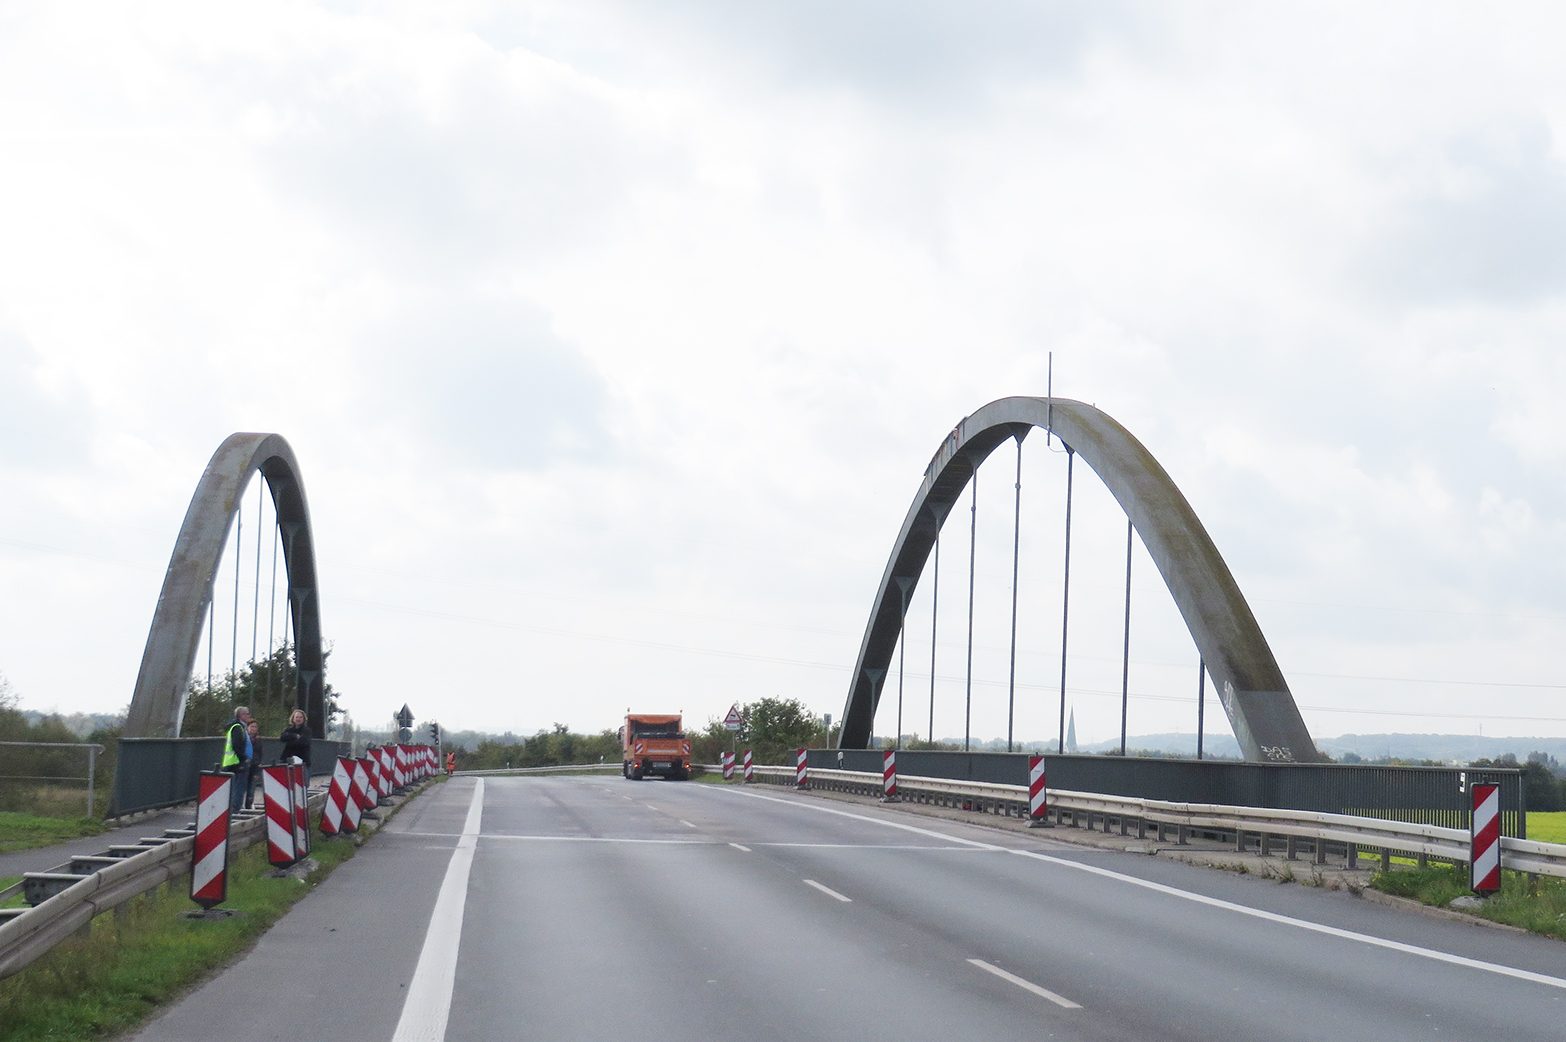 Drucksbrücke in Dortmund, Dauermessung